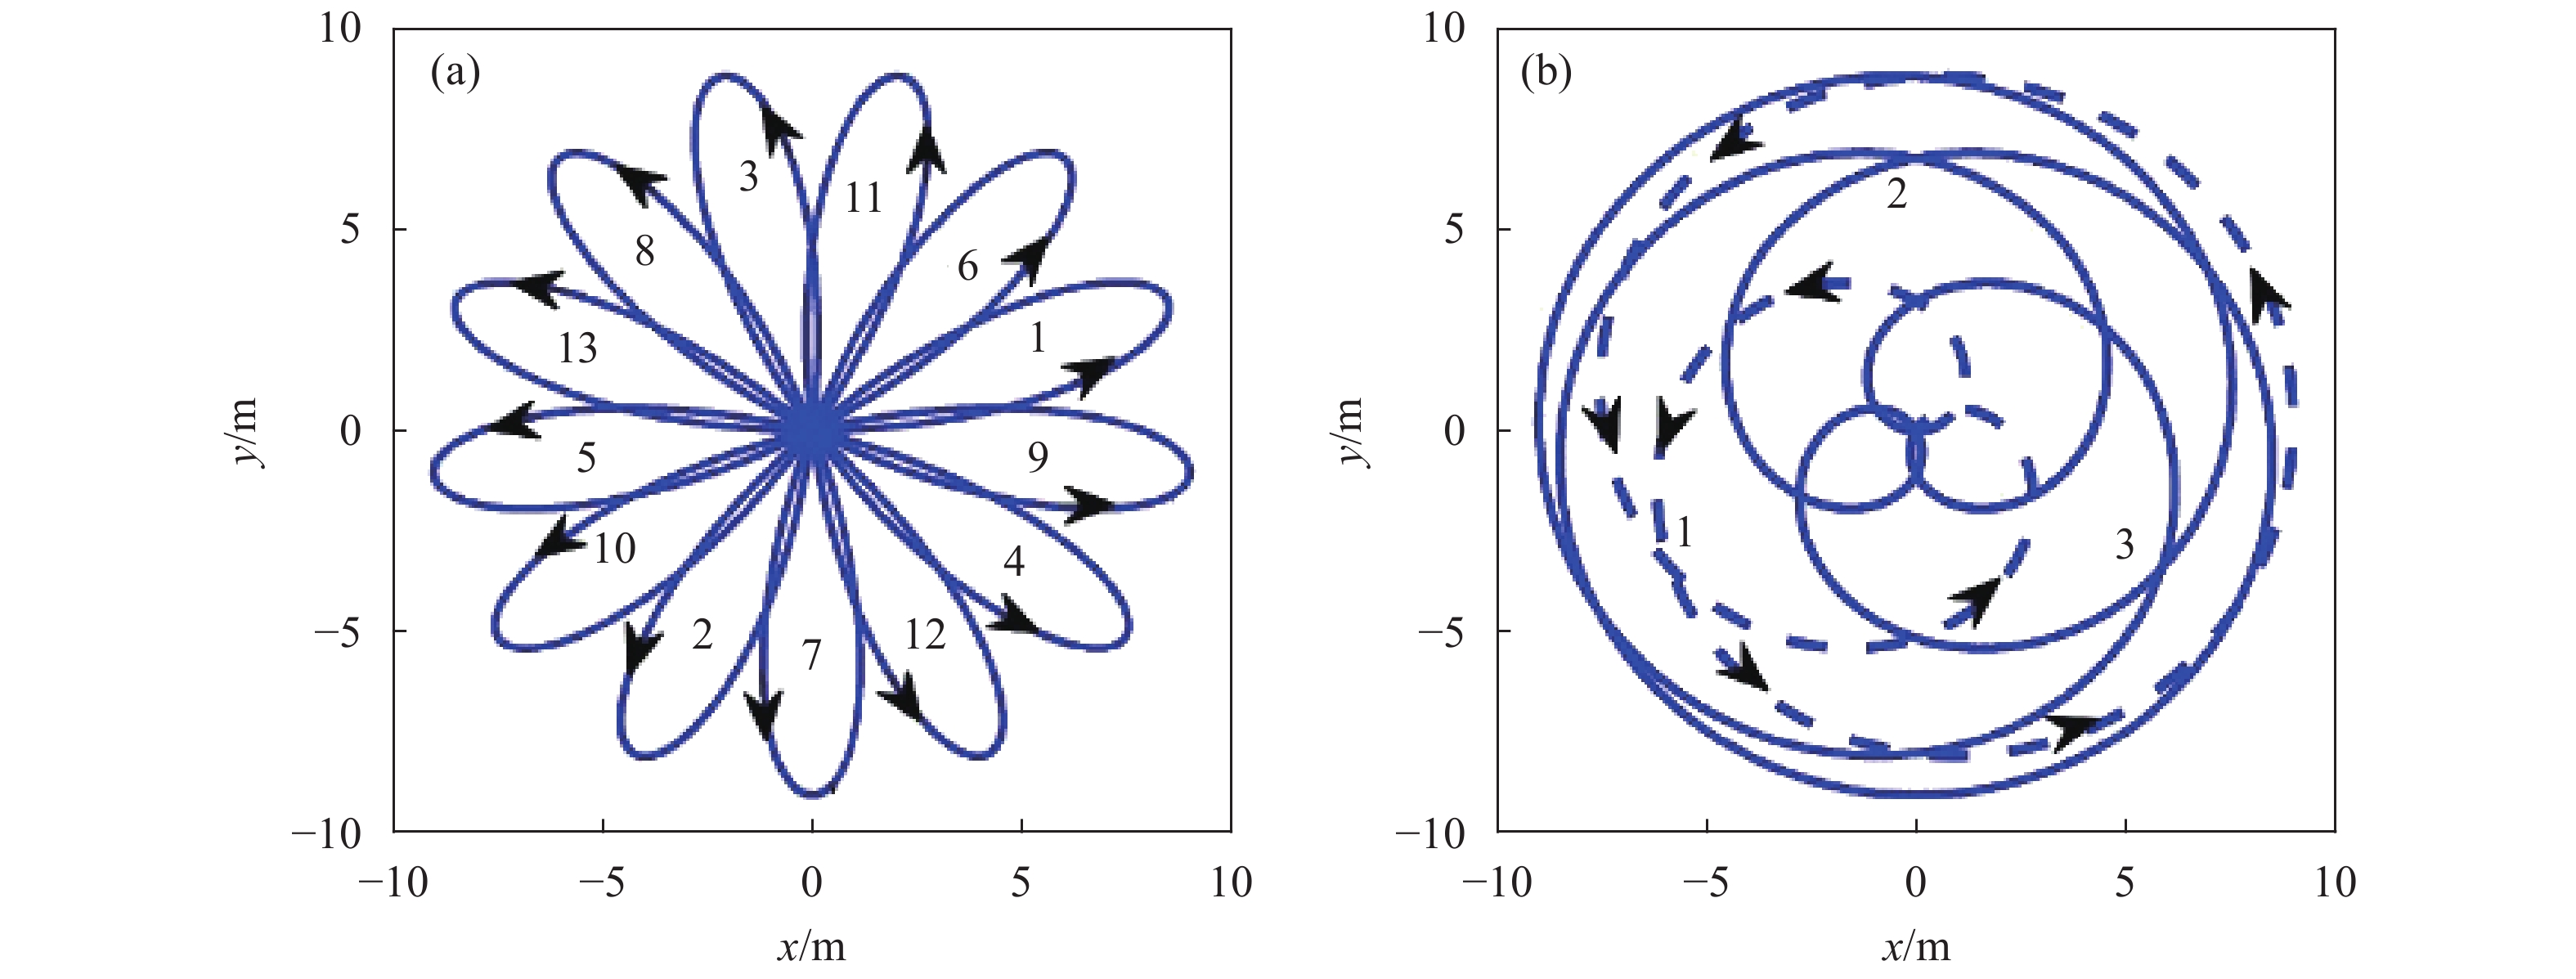 Risley prisms scanning trajectory. (a) f1/f2= −8/5; (b) f1/f2=8/5